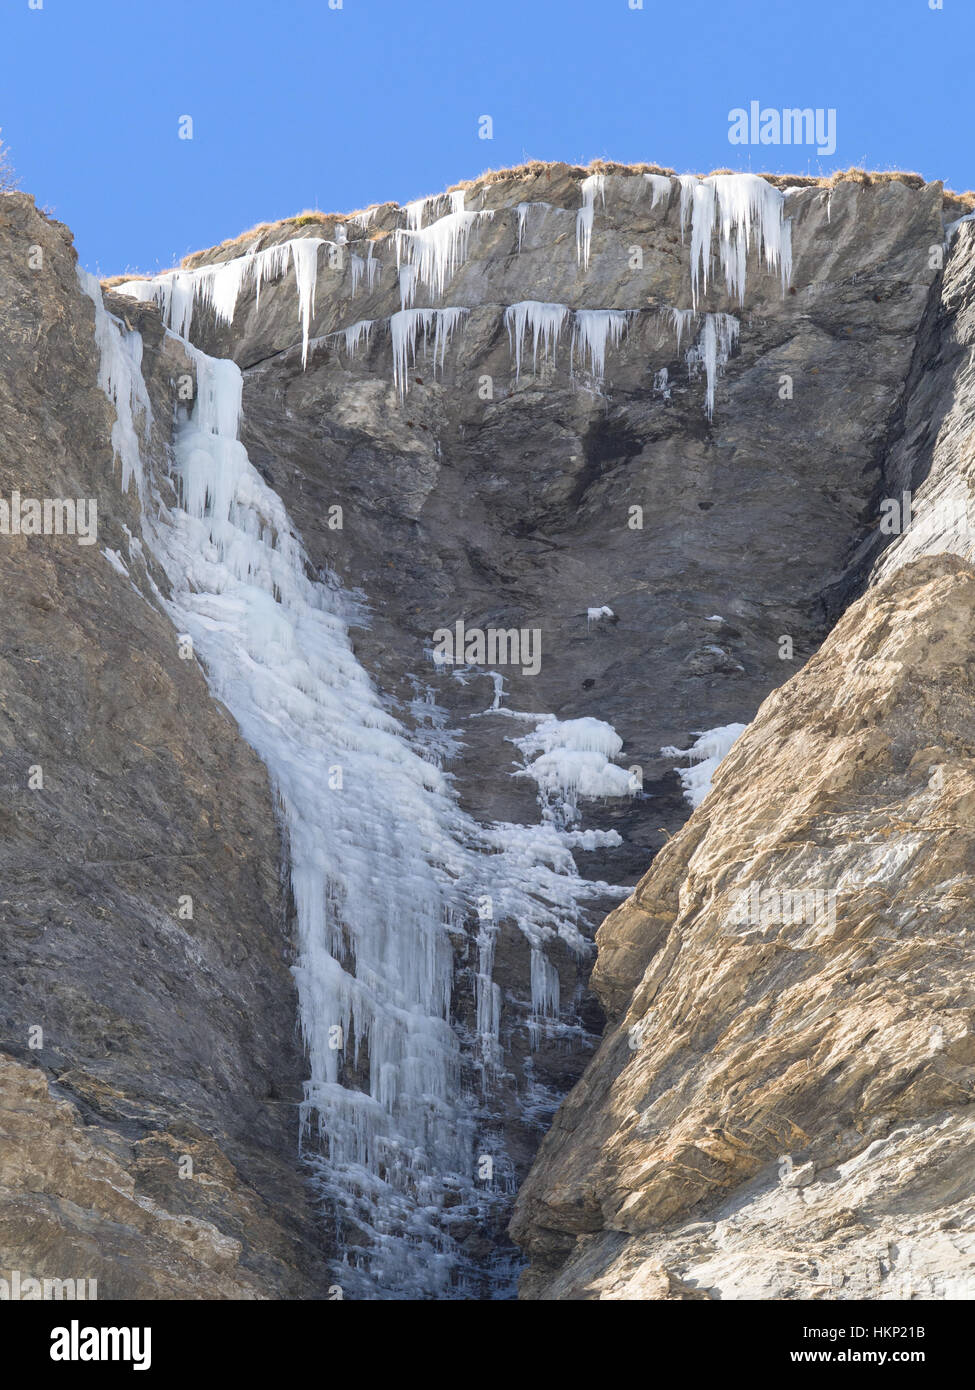 Cascade de glace et des stalactites de glace sur un rocher dans une montagne d'Alpes européennes Banque D'Images